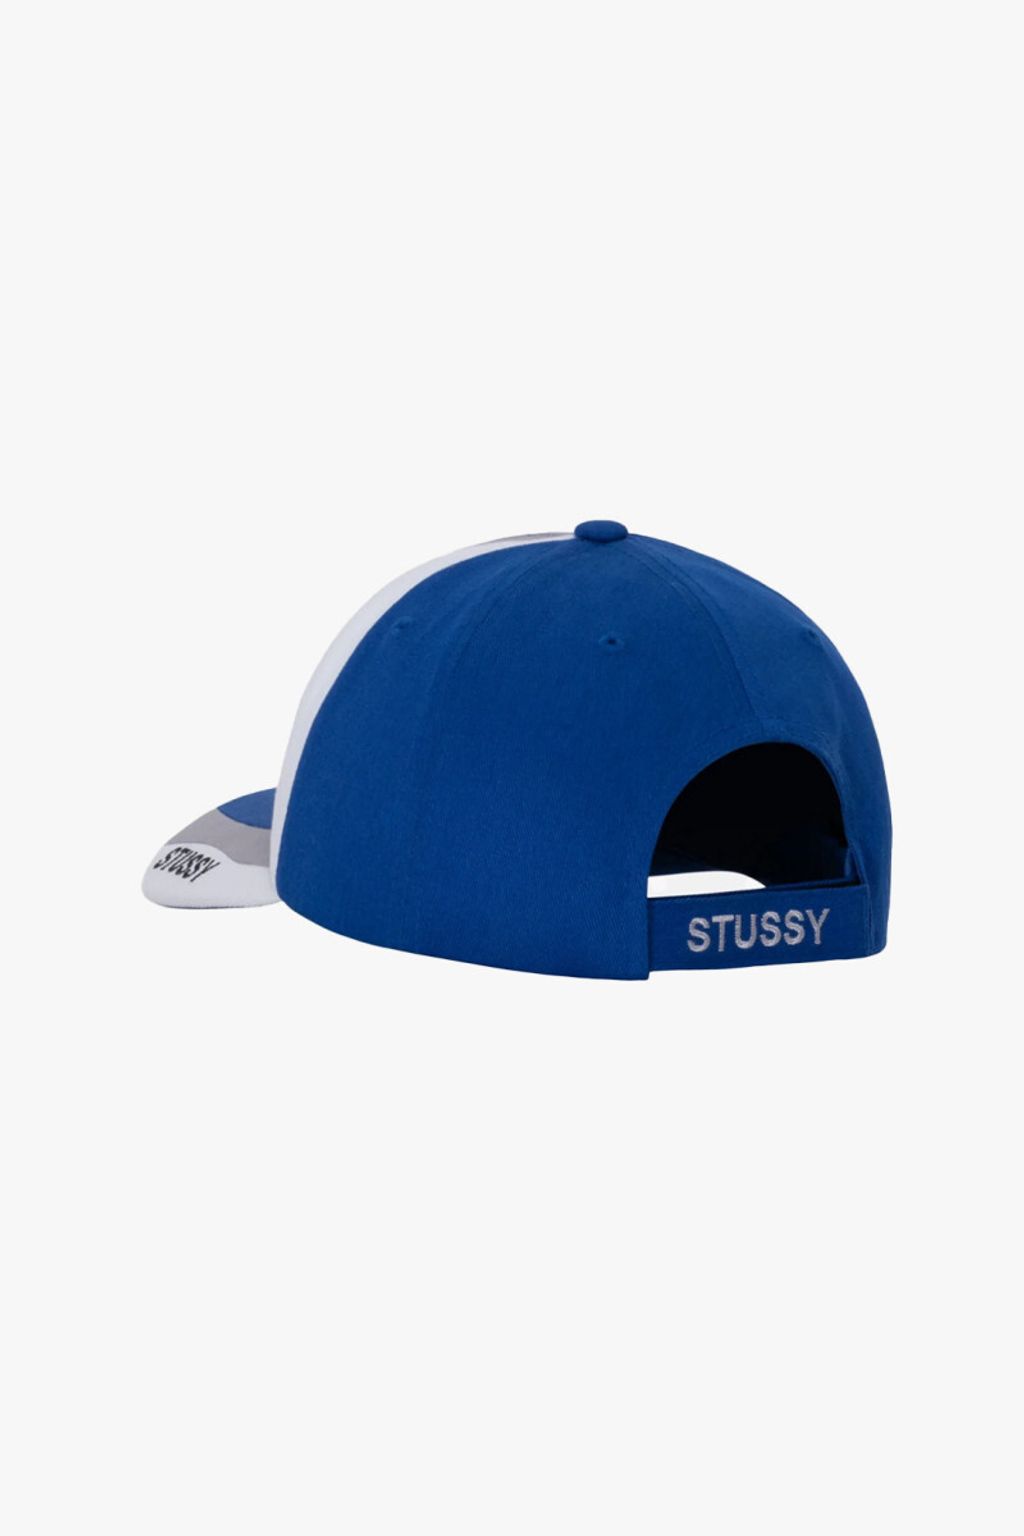 stussy-souvenir-low-pro-cap-blue (2)